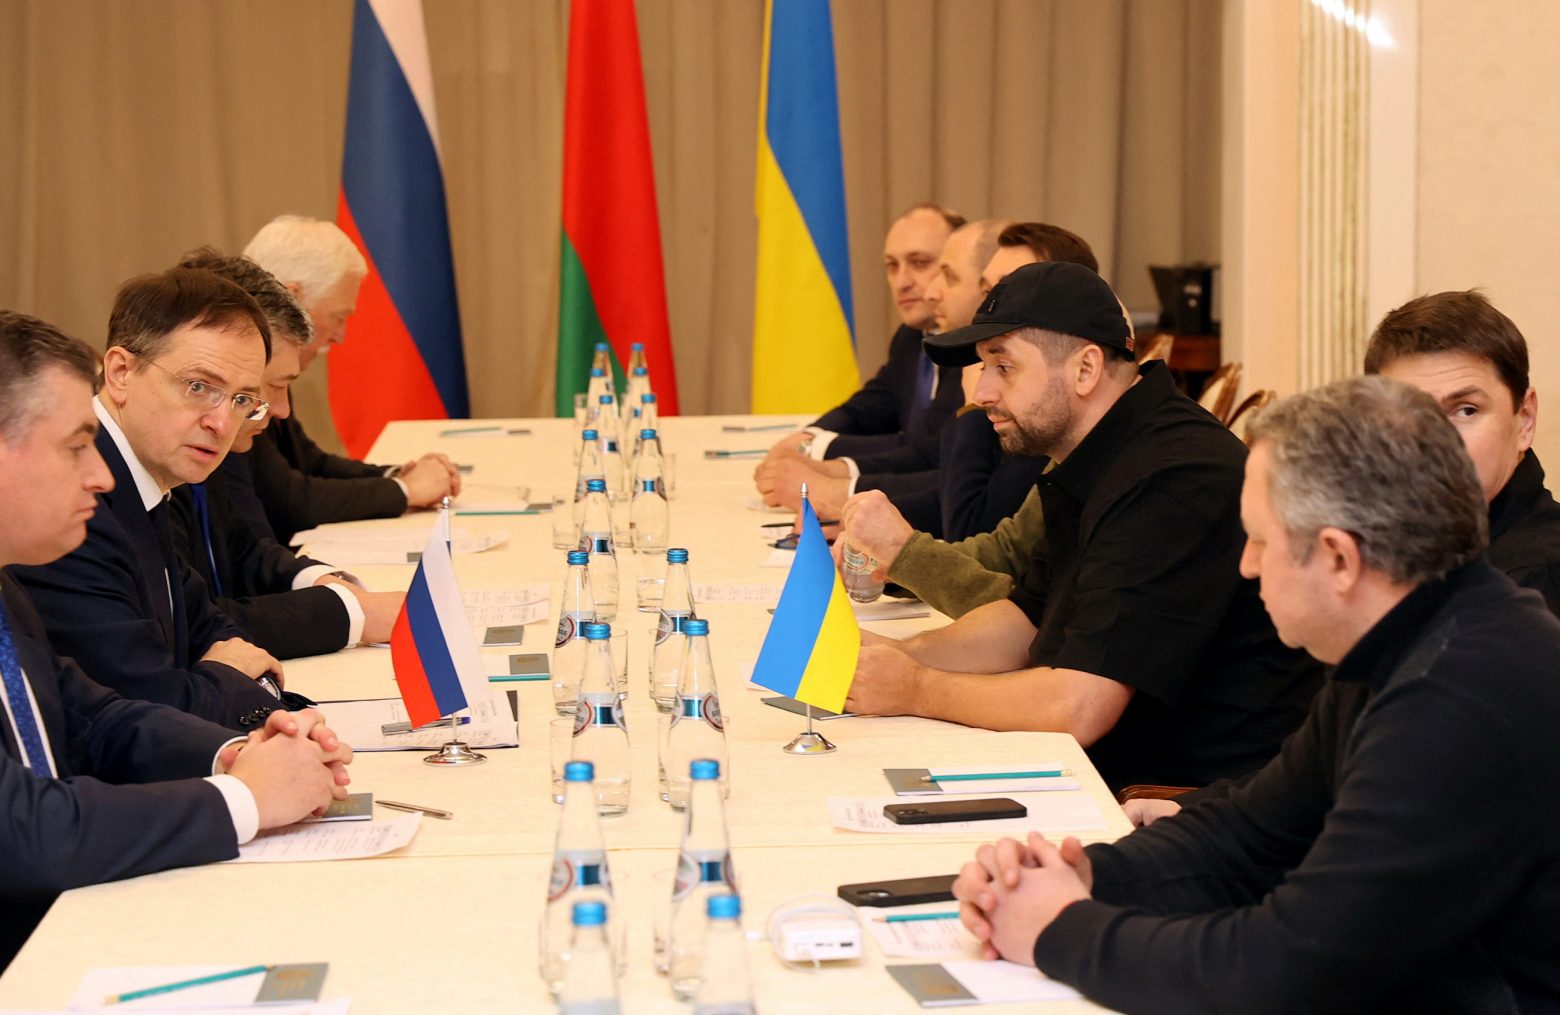 Πόλεμος στην Ουκρανία: Ολοκληρώθηκαν οι διαπραγματεύσεις του Κιέβου με τη Μόσχα - Γιατί γυρίζουν στις πατρίδες τους